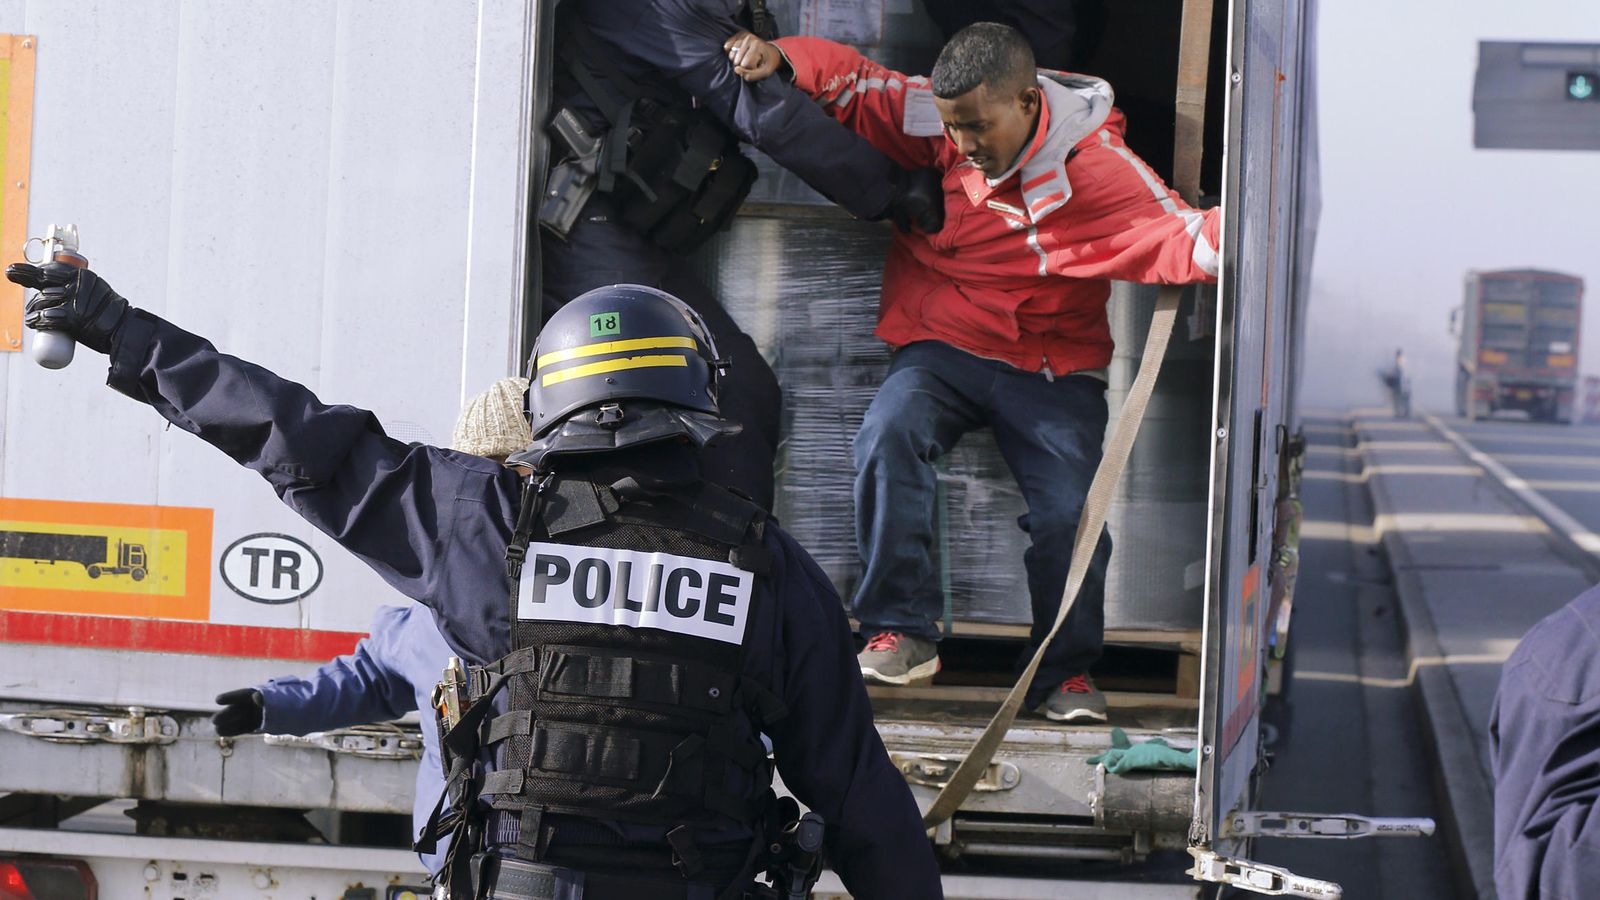 Foto: Inmigrantes expulsados del interior de un camión en Calais (Reuters)